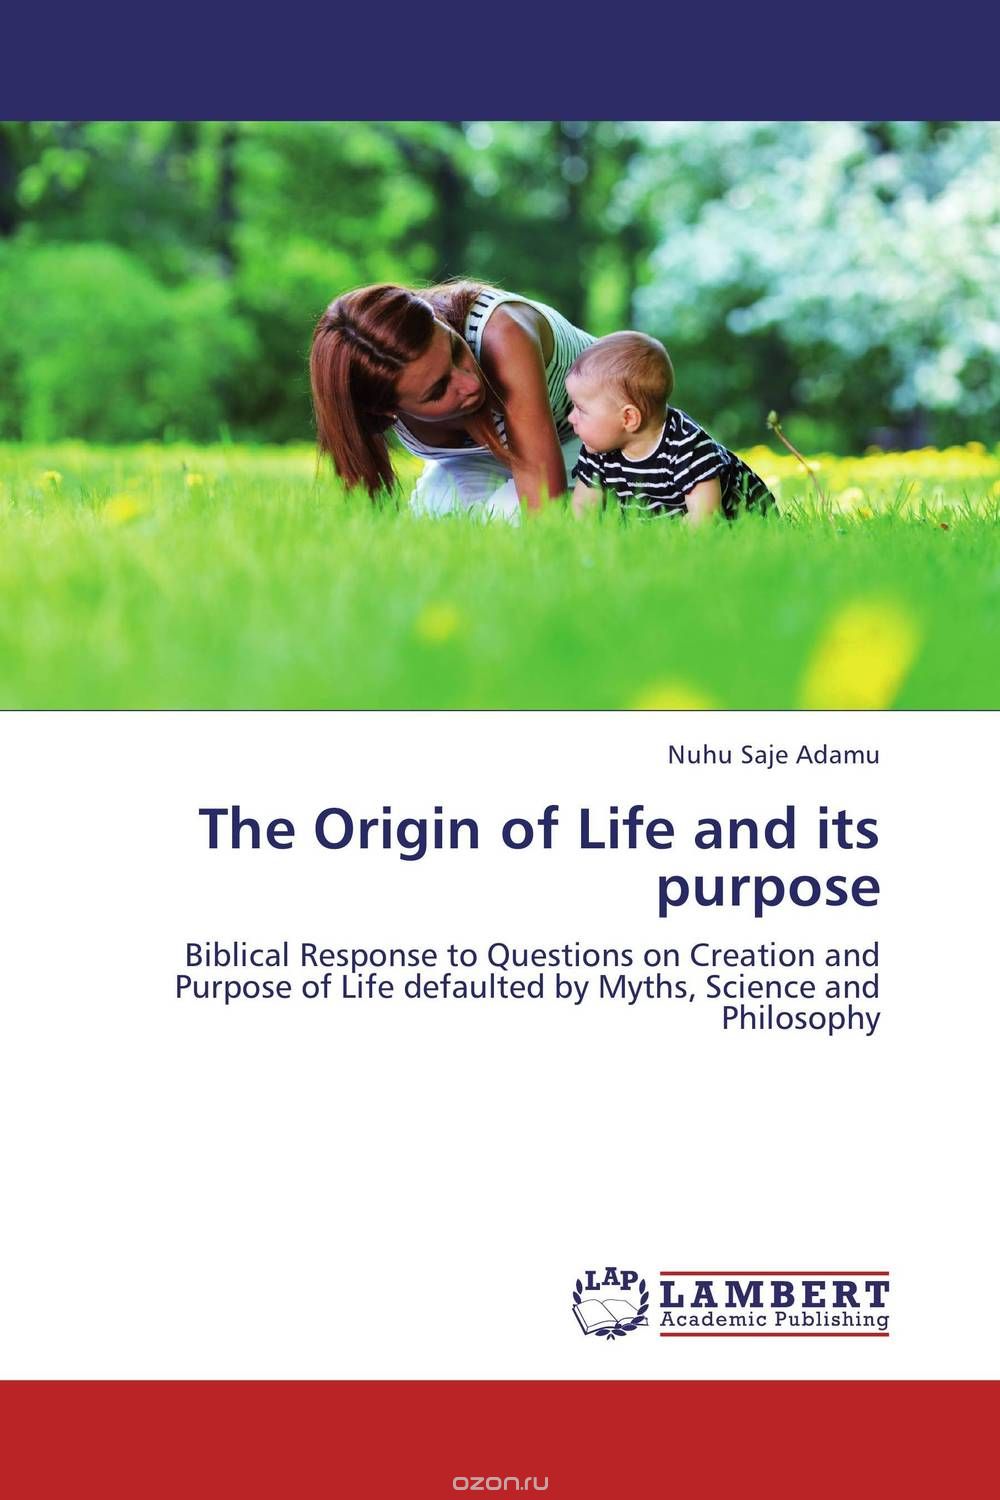 Скачать книгу "The Origin of Life and its purpose"